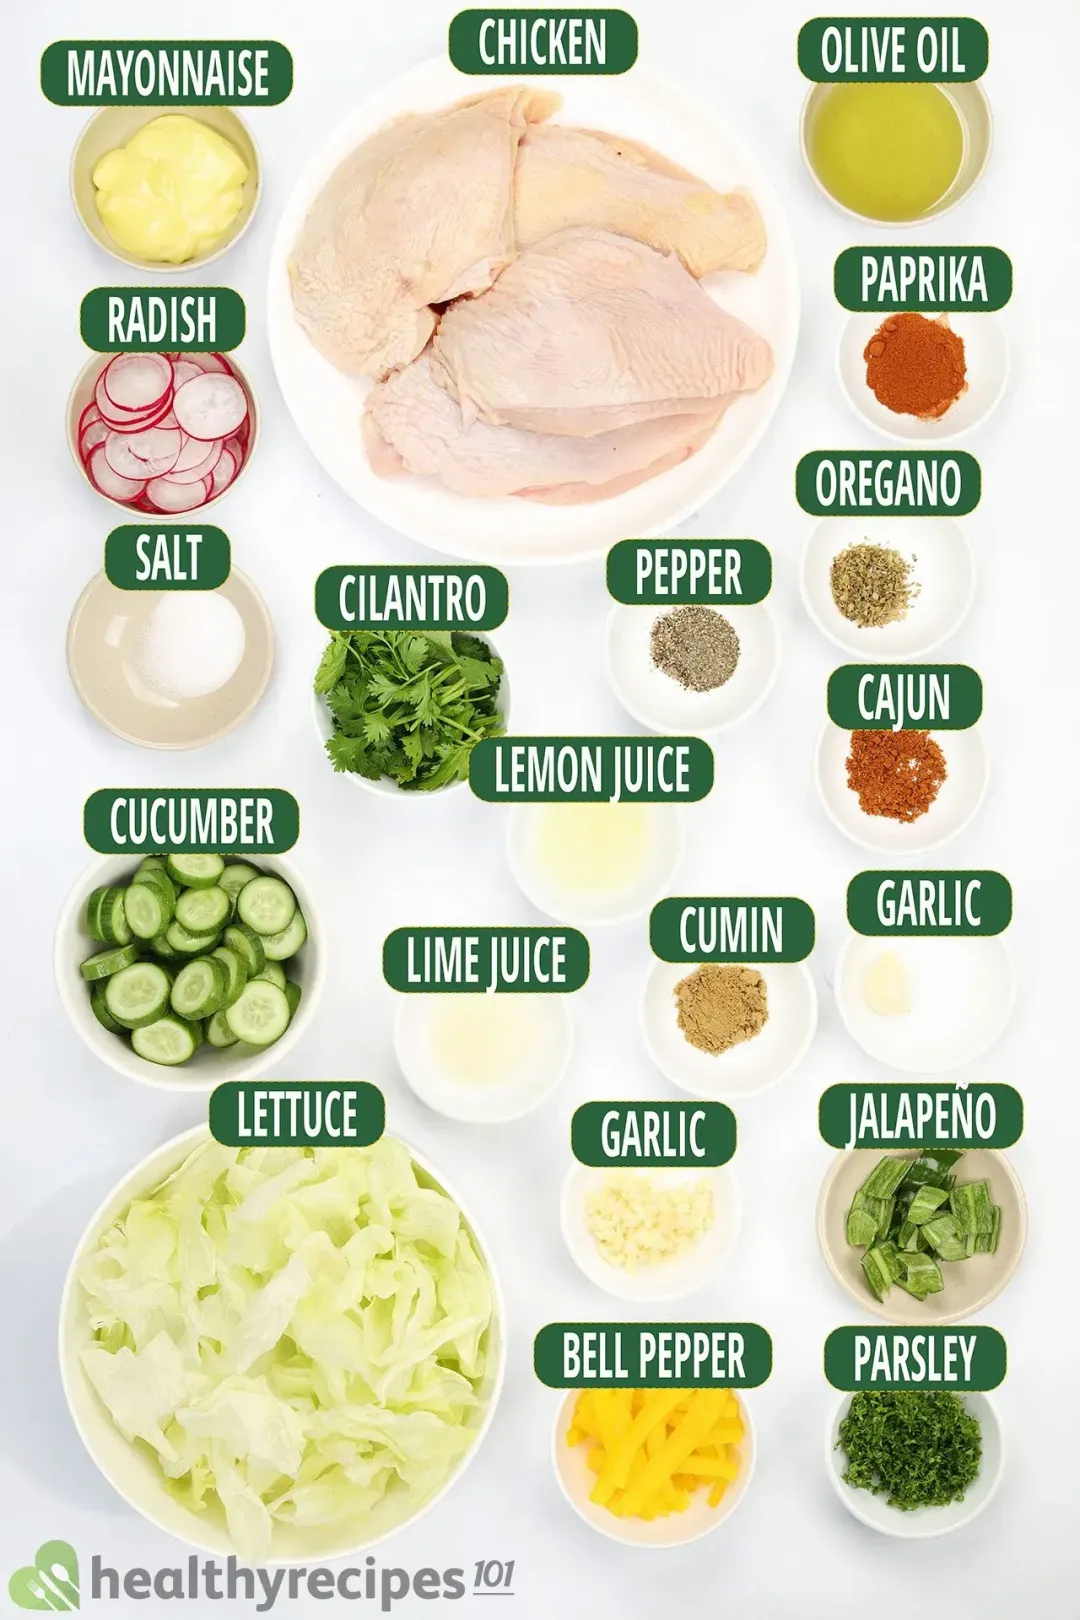 Ingredients for Peruvian Chicken